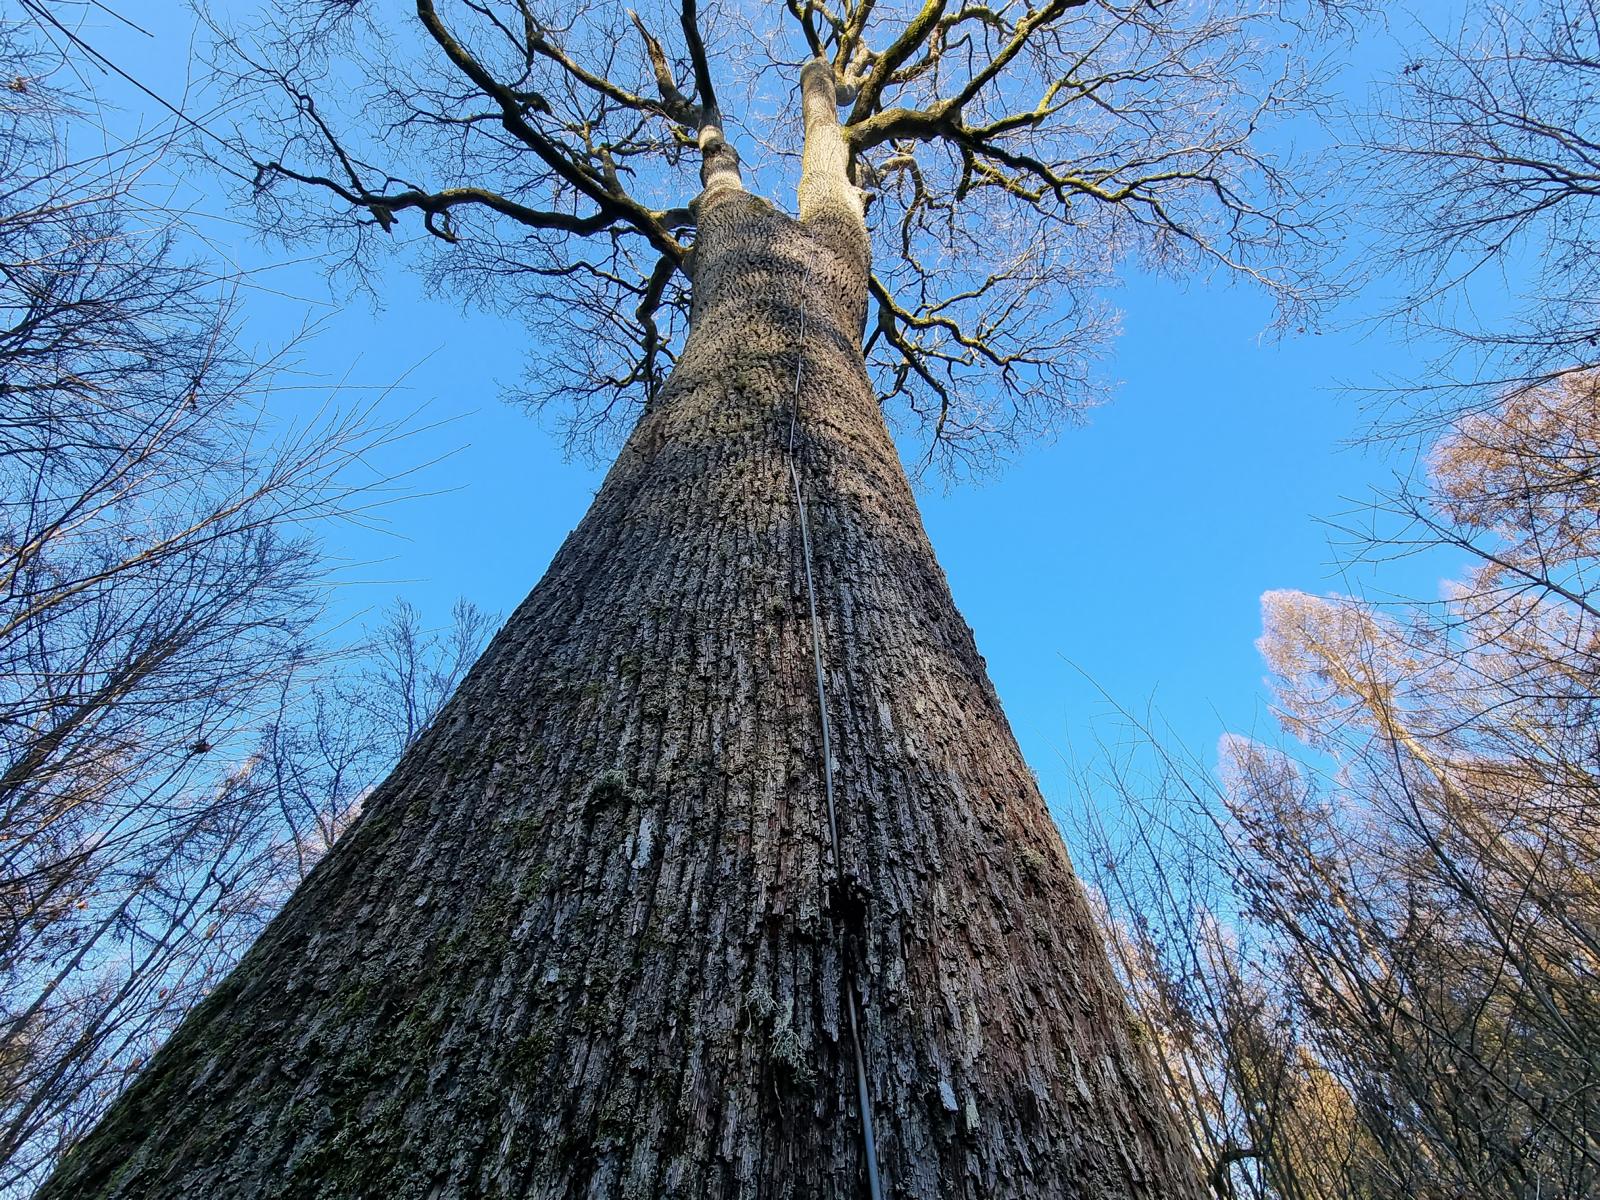 Königseiche: Baum mit Blitzableiter, da er den Bestand überragt